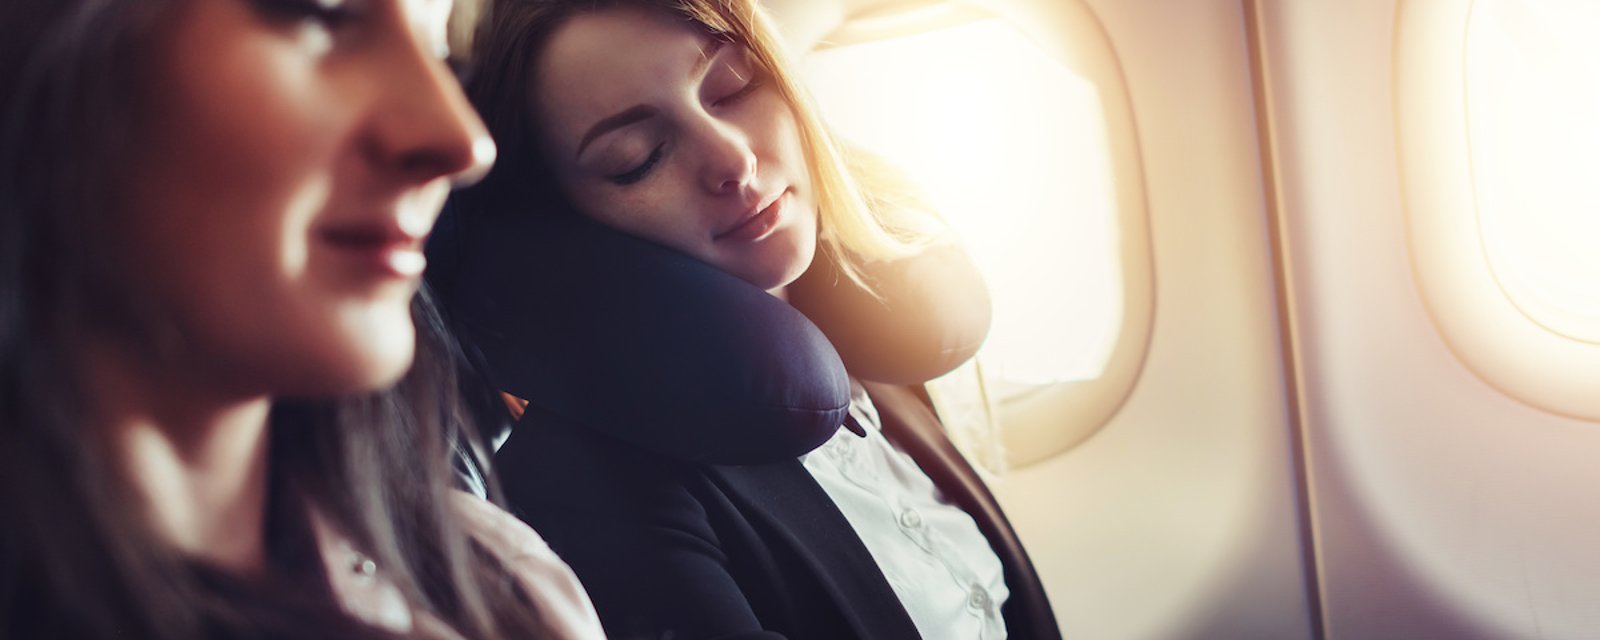 Voici comment soulager votre dos si vous voyagez en avion, en train ou en auto